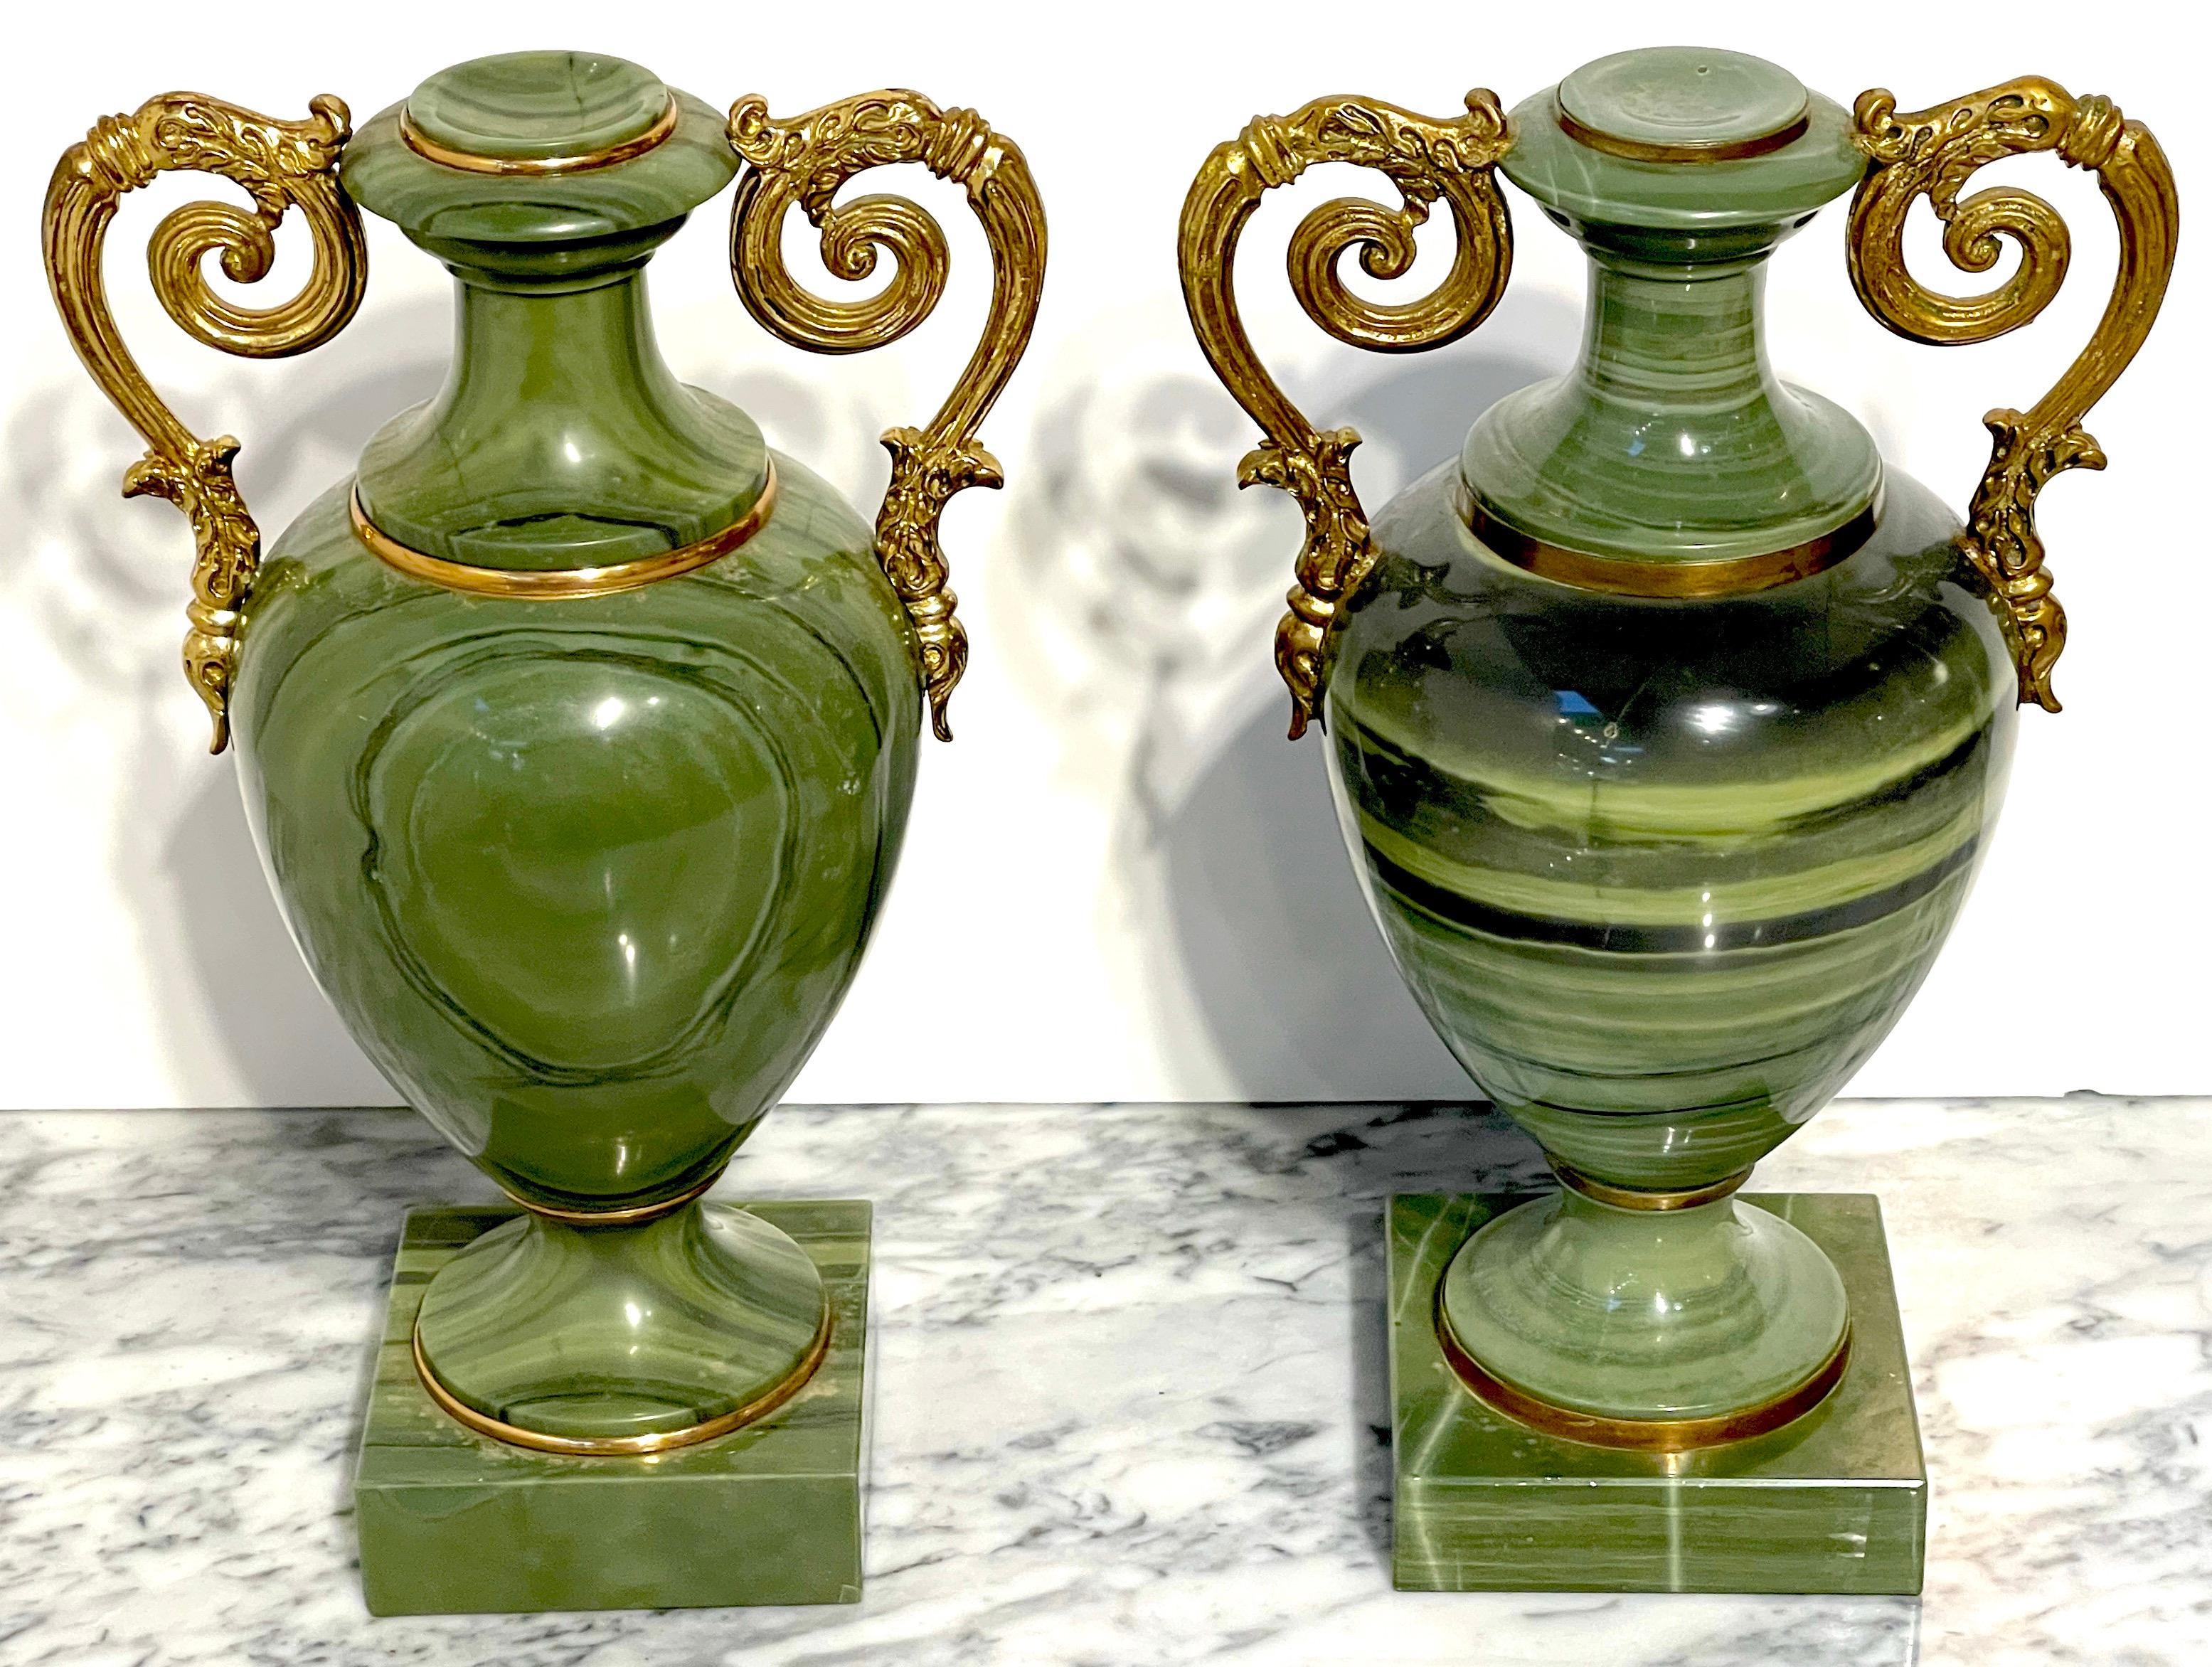 Paar russische neoklassische Unikatvasen mit grünem Quarz und Ormolu-Montierung
Art Quarz, gemeinhin bekannt als Achat 

Ein exquisites Paar russischer neoklassizistischer Vasen aus dem 19. Jahrhundert, jede ein Unikat aus grünem Quarz, gemeinhin